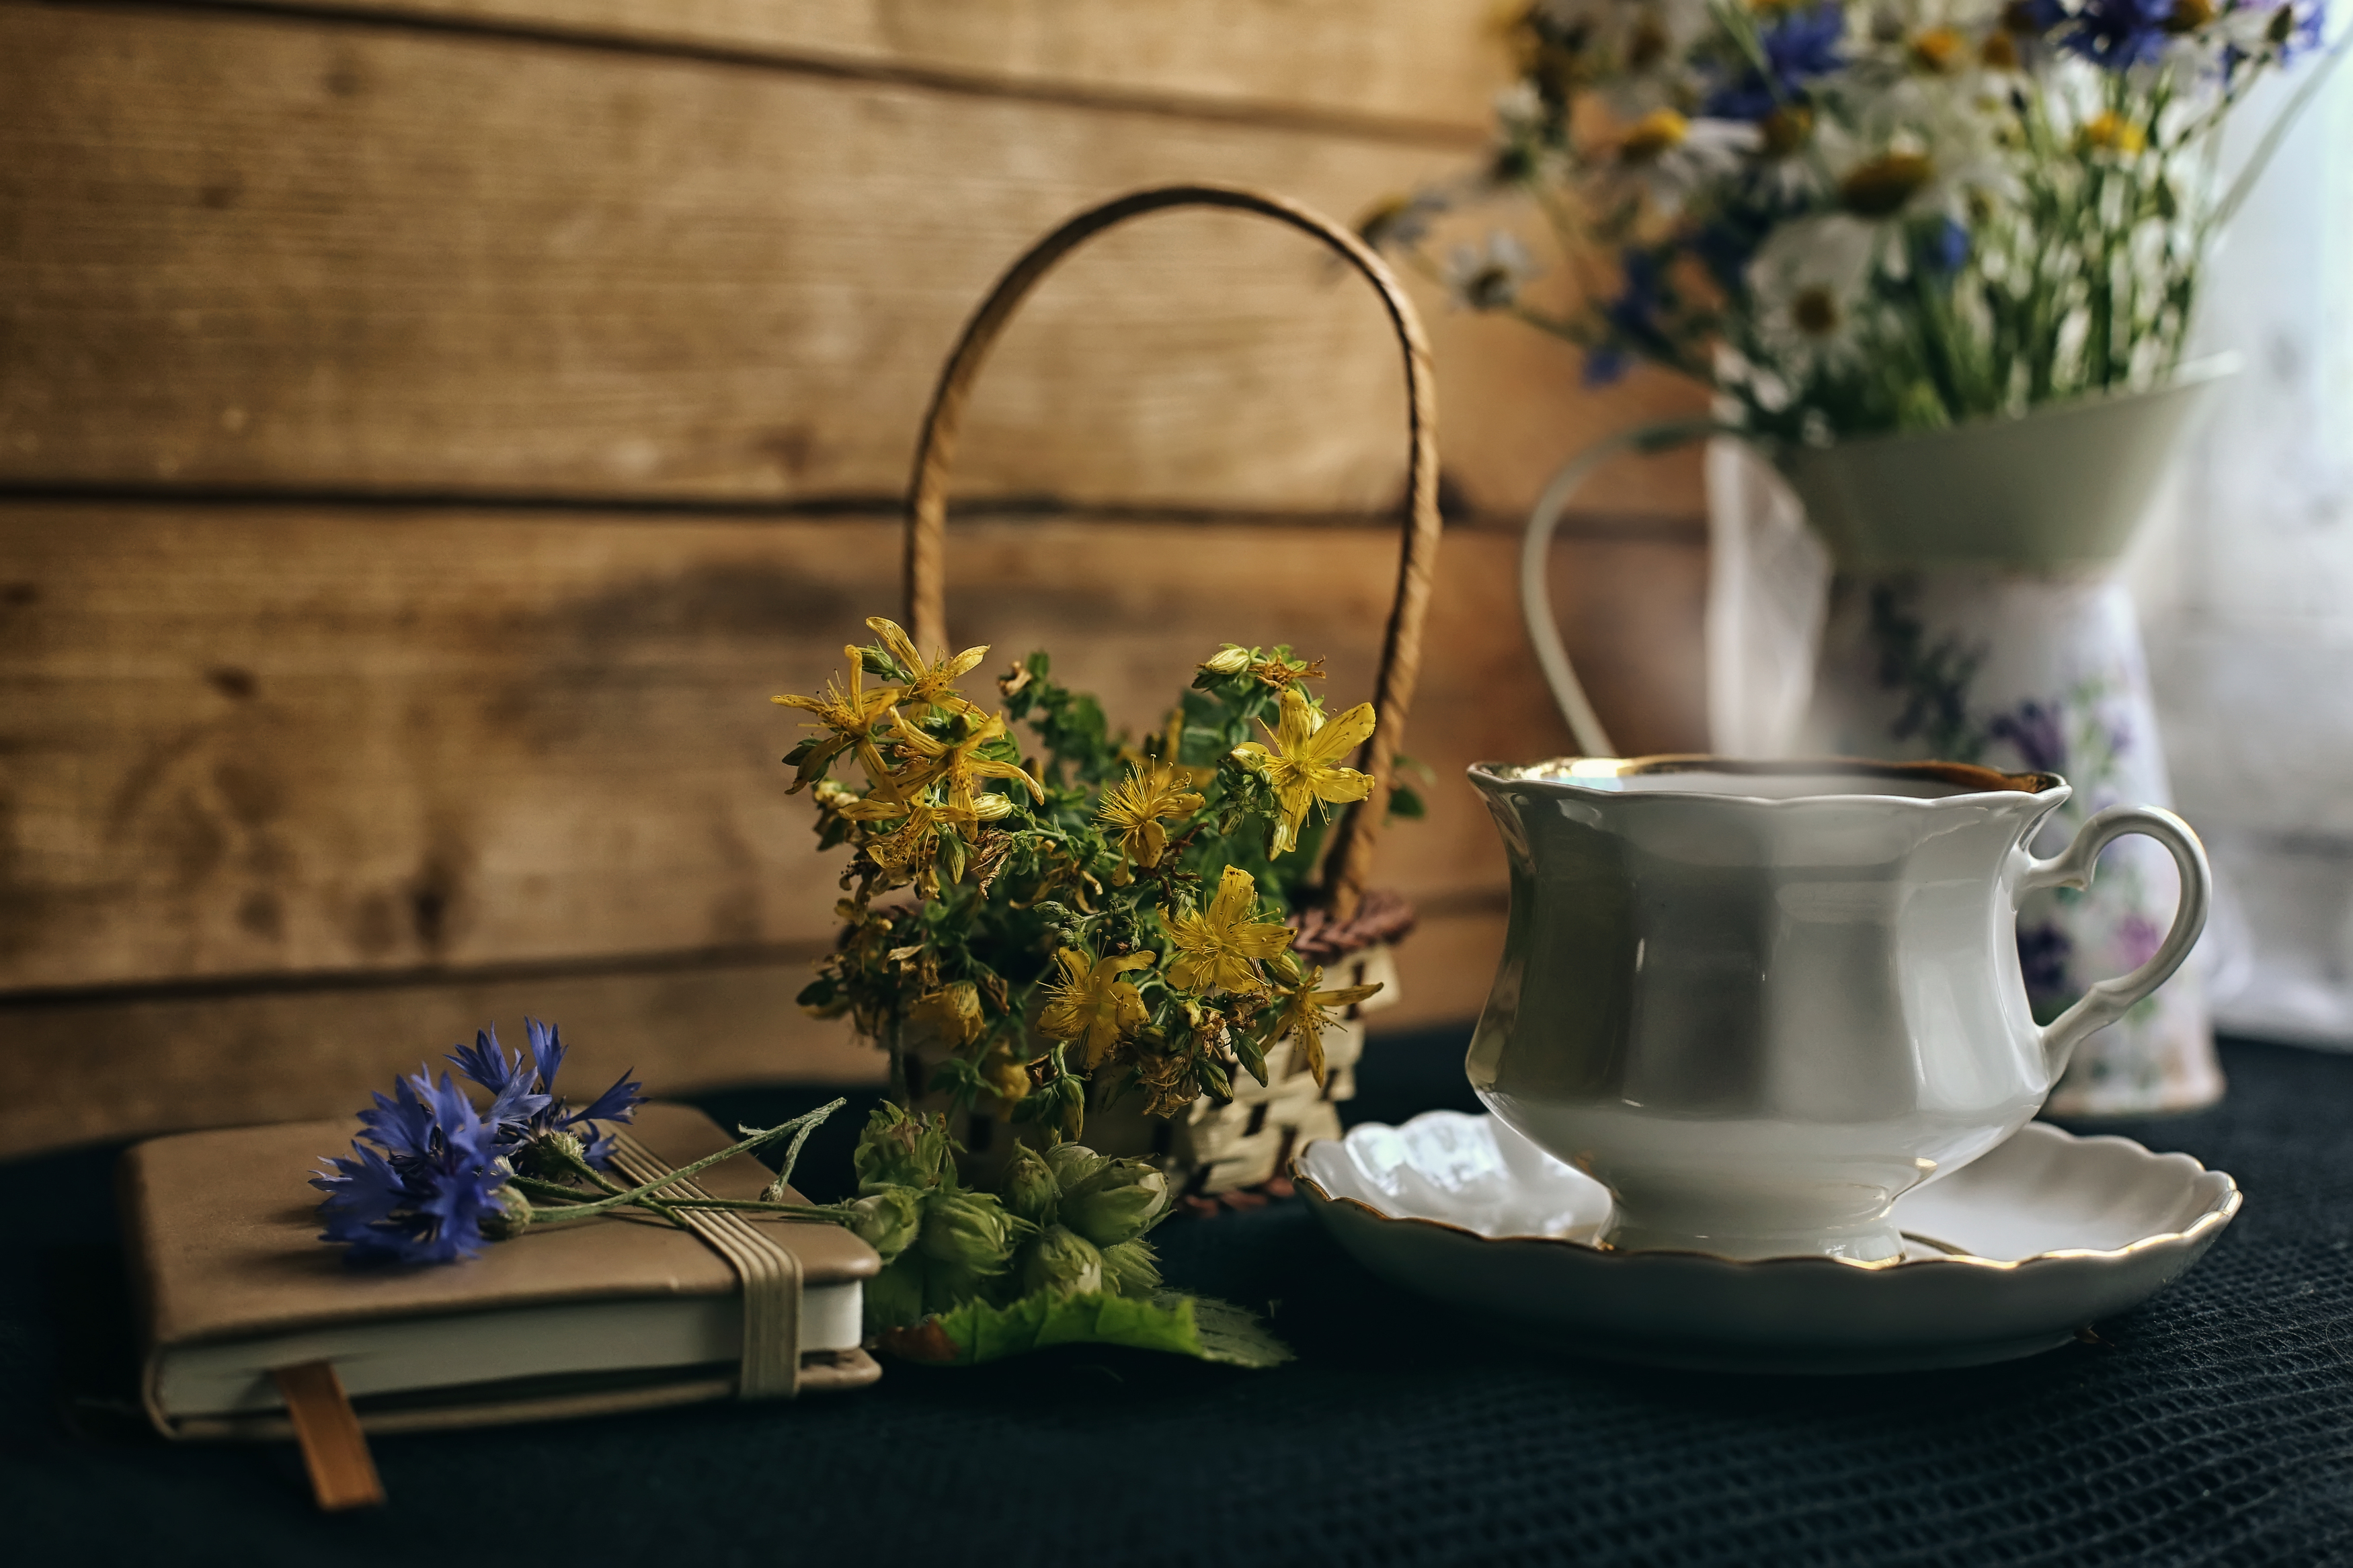 чайная, тема, чай, утро, цветы на столе, деревенский, полевые цветы, букет, ваза, графин, чашка чая, зверобой, записная книжка, возле окна, Стасов Виталий